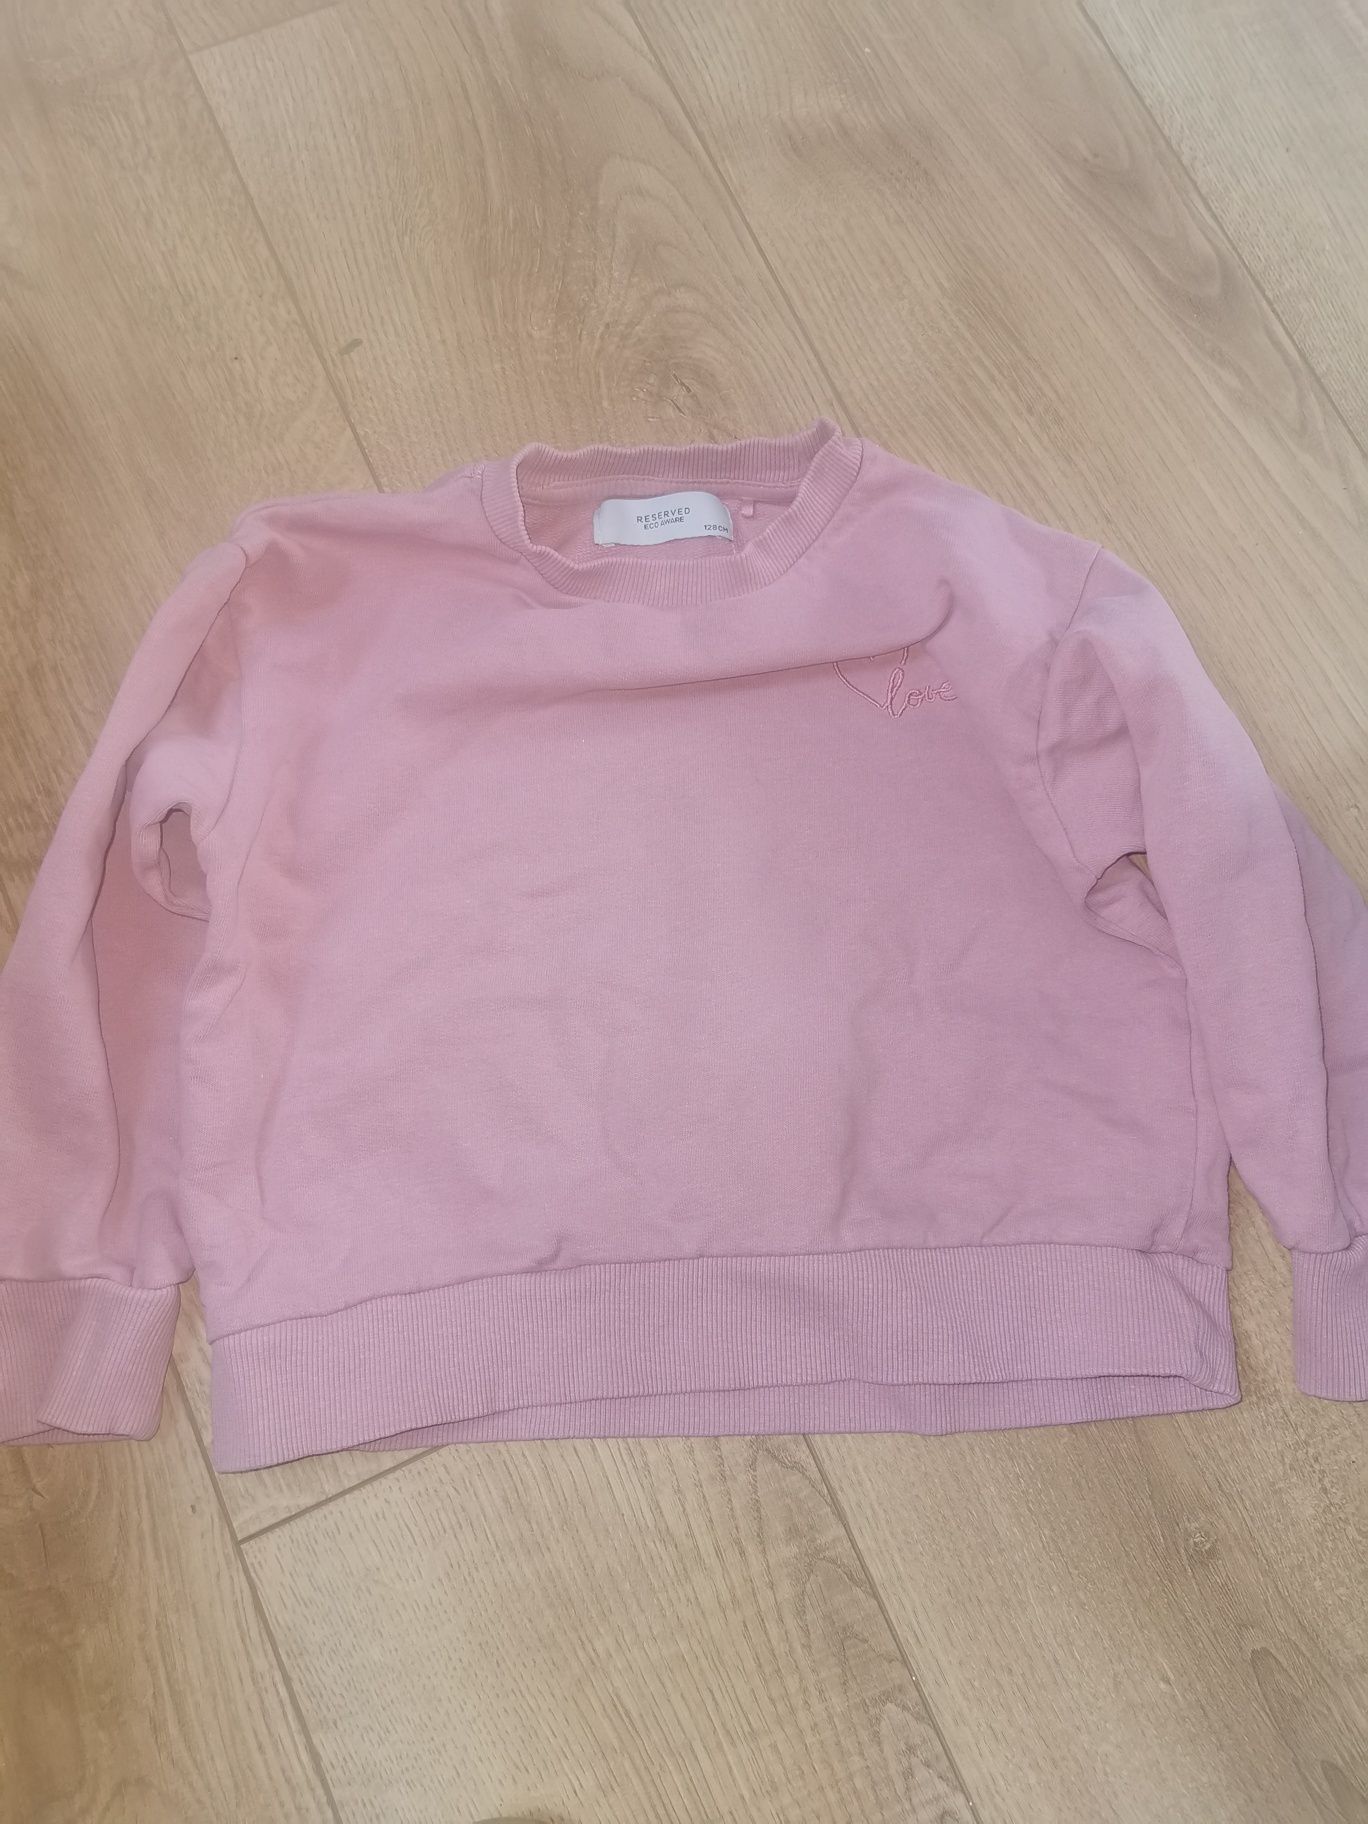 Różowa bluza Reserved 128 dla dziewczynki krótka